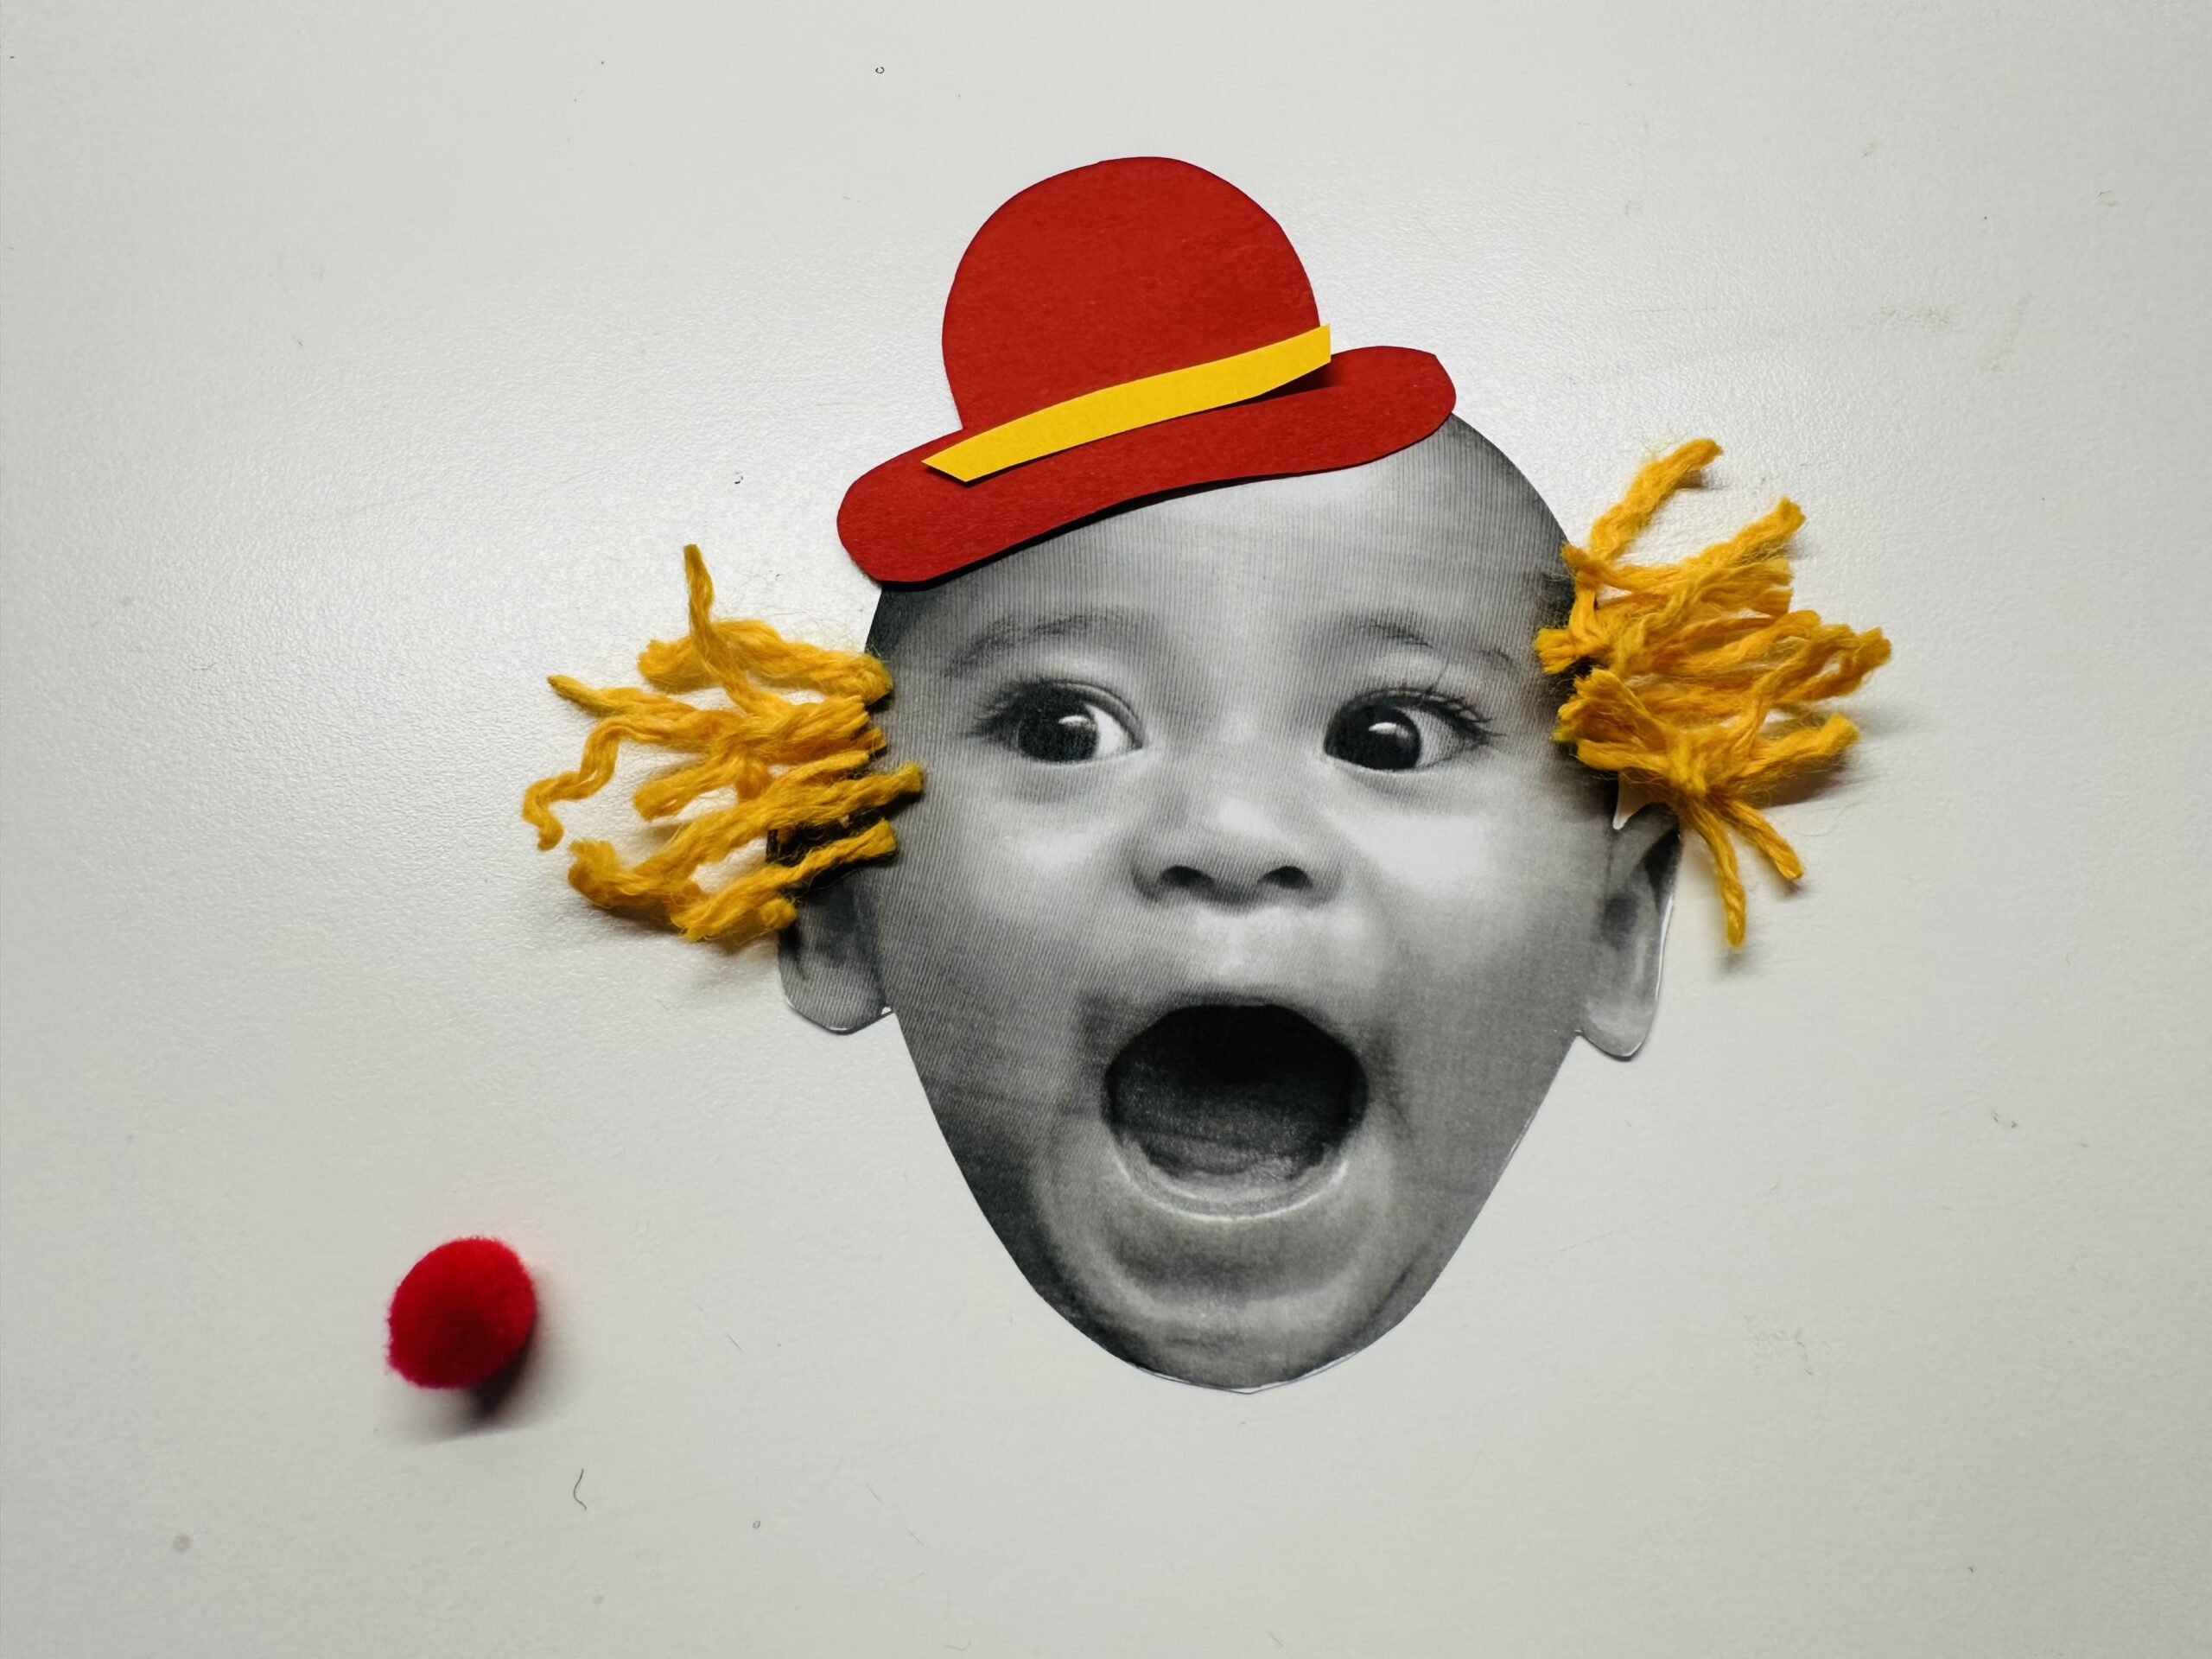 Bild zum Schritt 7 für das Bastel- und DIY-Abenteuer für Kinder: 'Die Haare und den Hut erst zurecht legen, und wenn...'